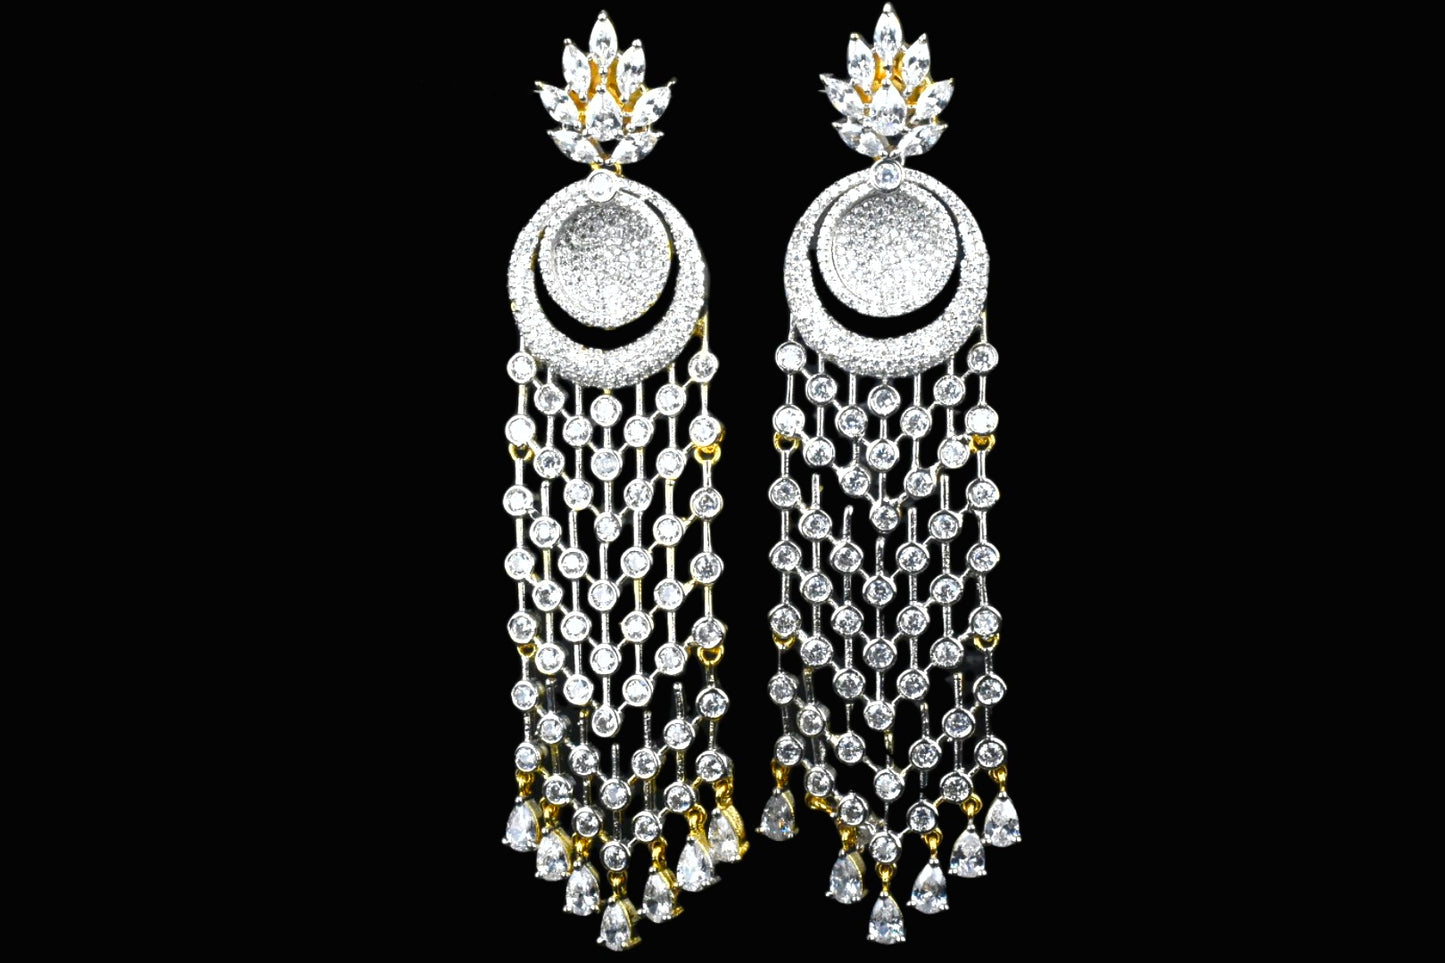 Diamond Chandelier earrings